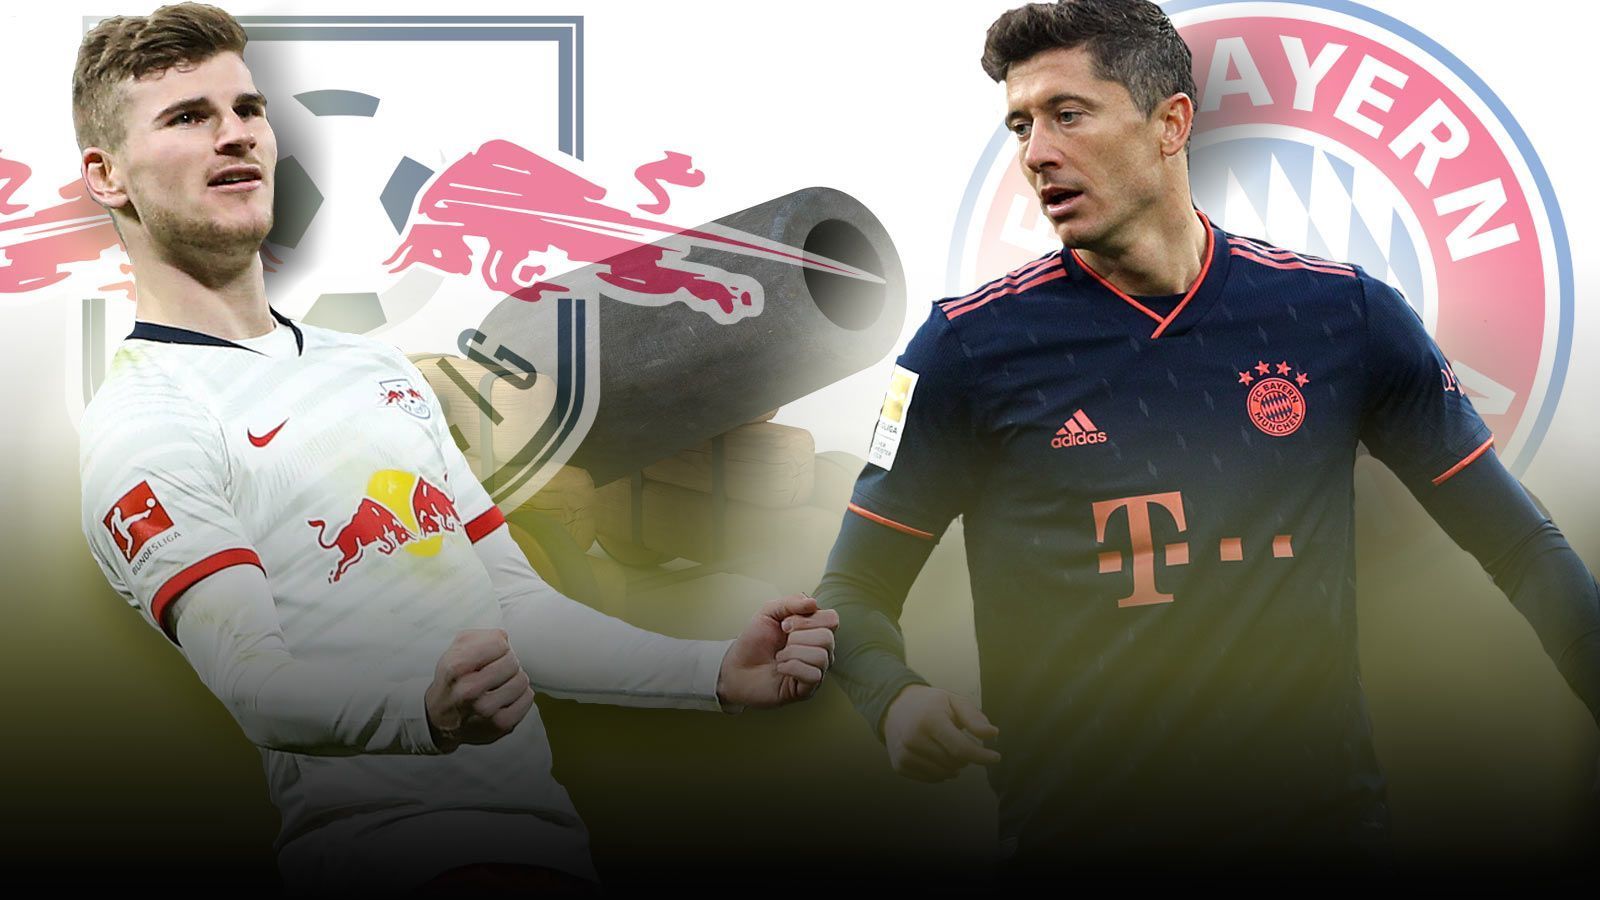 
                <strong>Lewandowski vs. Werner: Das Duell der Super-Bomber</strong><br>
                Wenn am Sonntag der FC Bayern München und RB Leipzig aufeinandertreffen, ist das Spitzenspiel vor allem auch ein Duell der beiden Stürmerstars Robert Lewandowski und Timo Werner. ran.de hat die beiden verglichen.
              